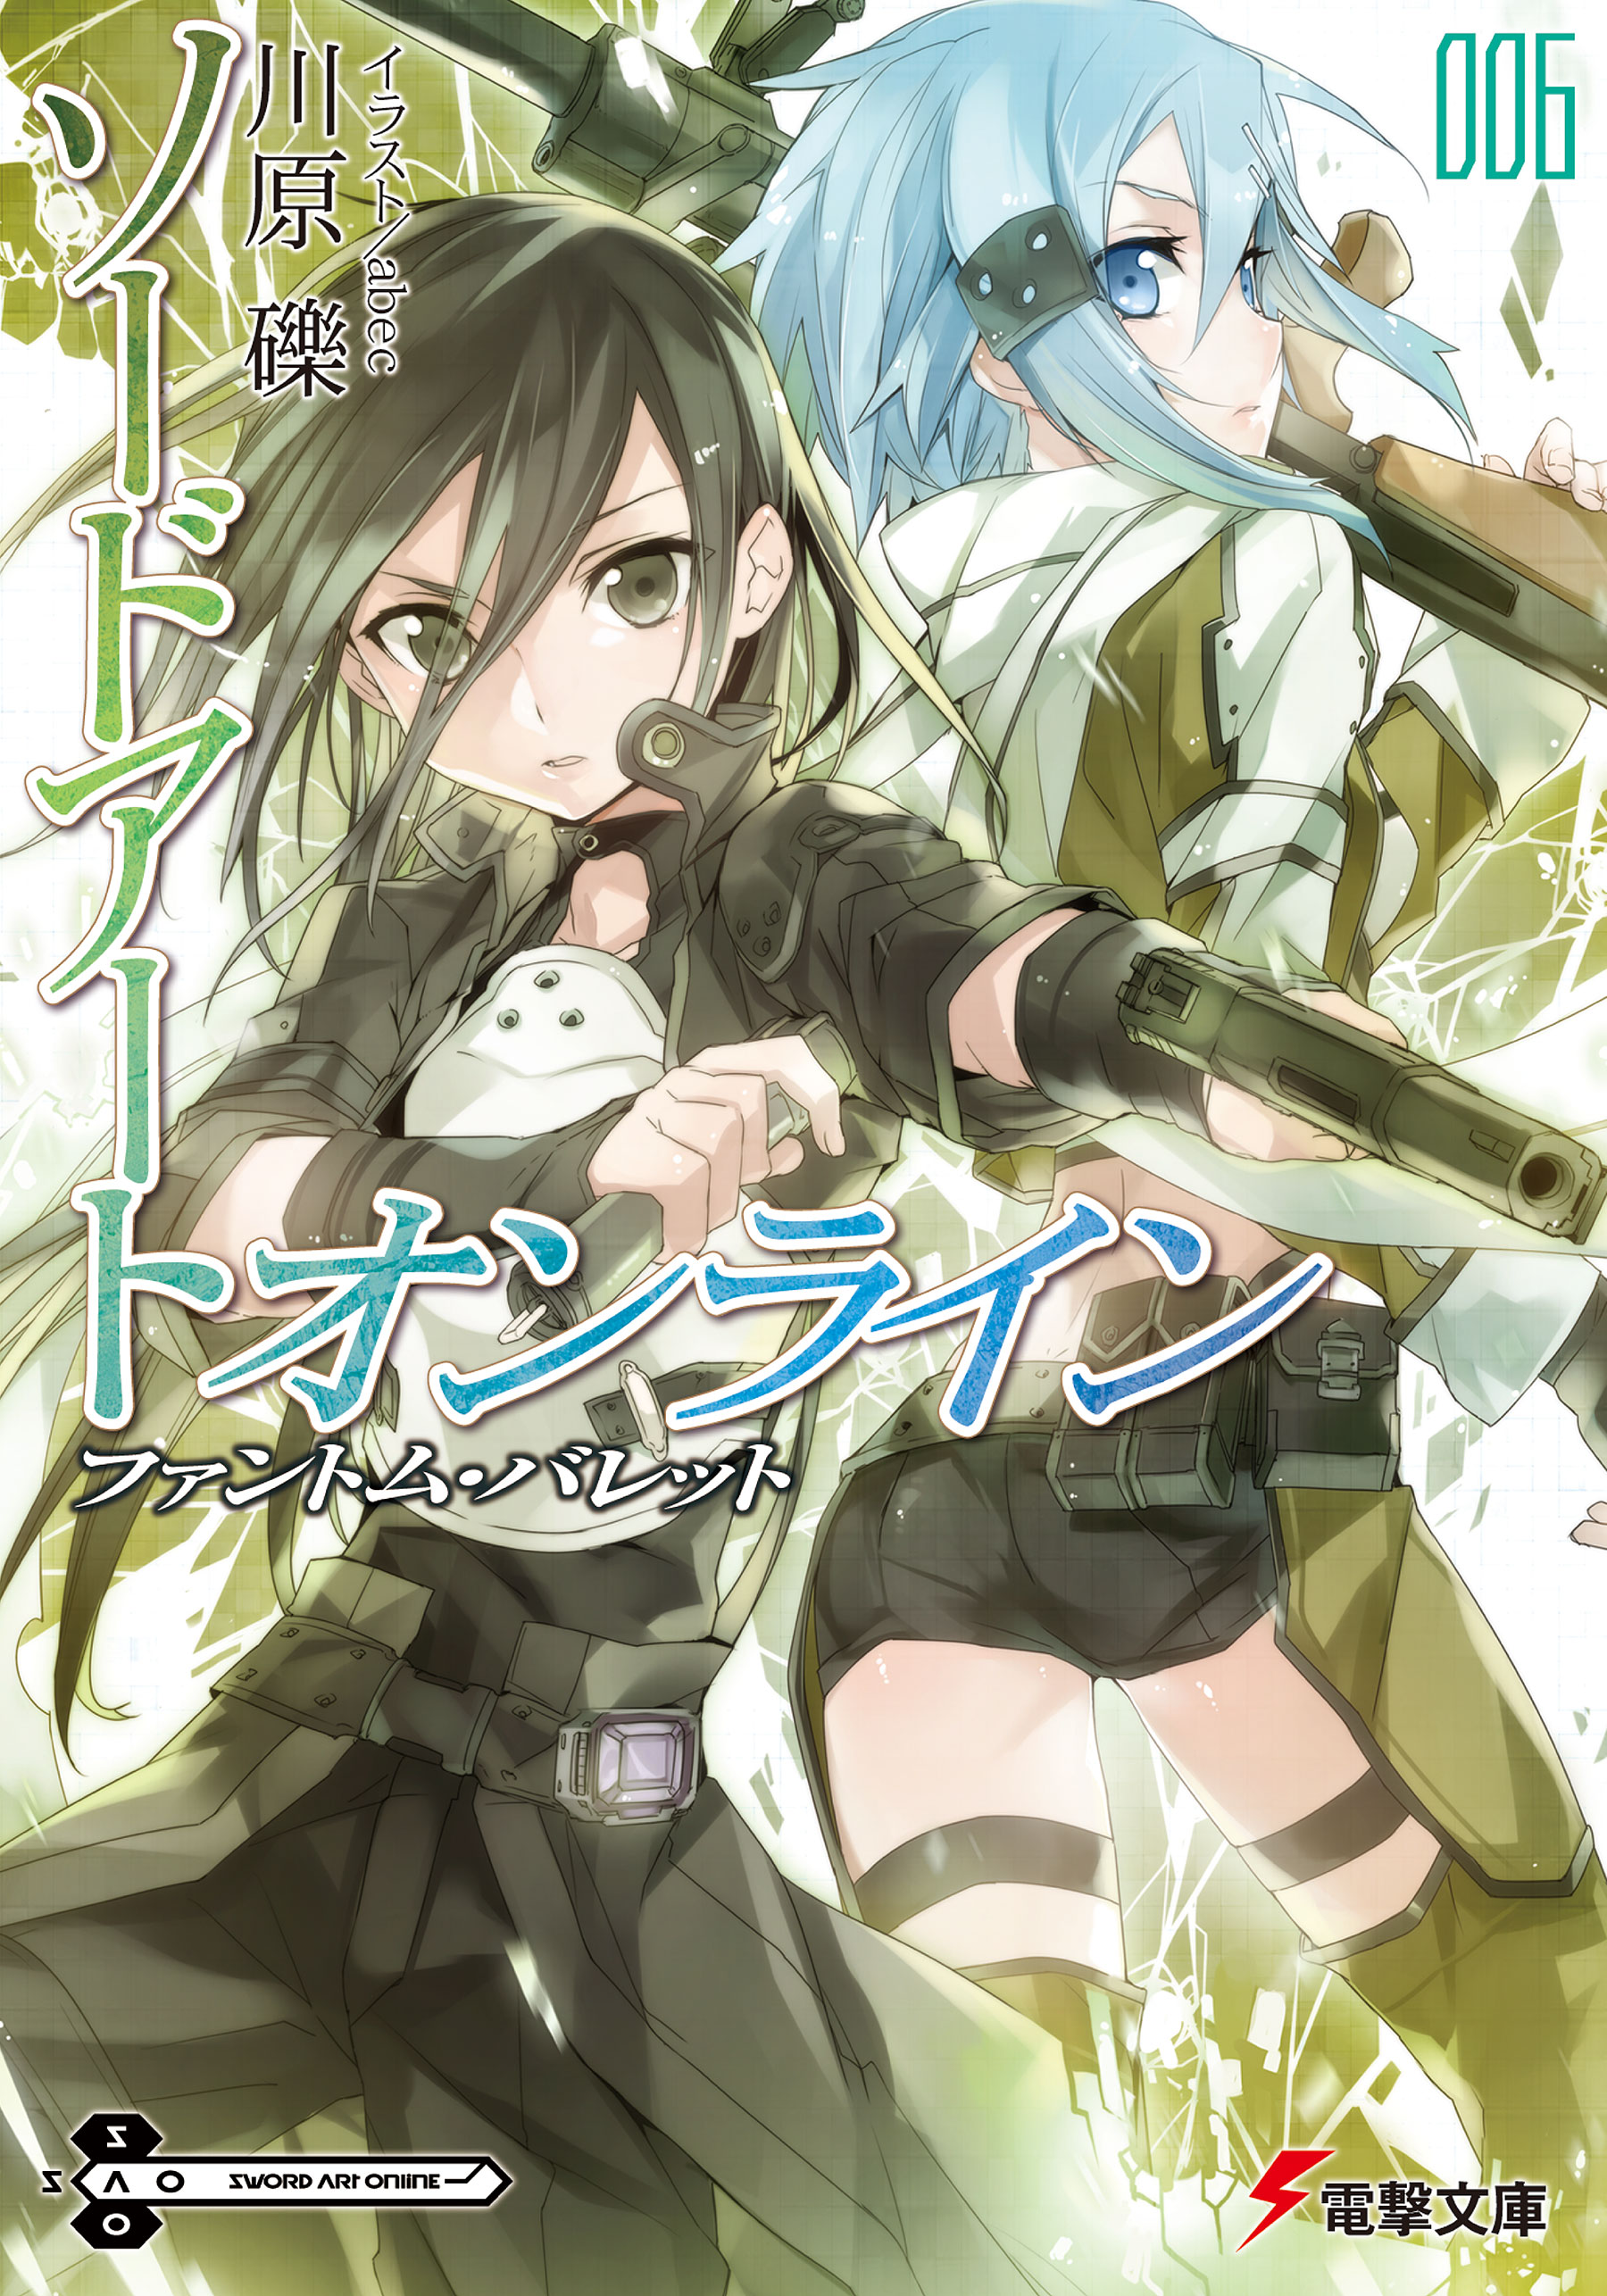 Sword Art Online Light Novel Volume 06